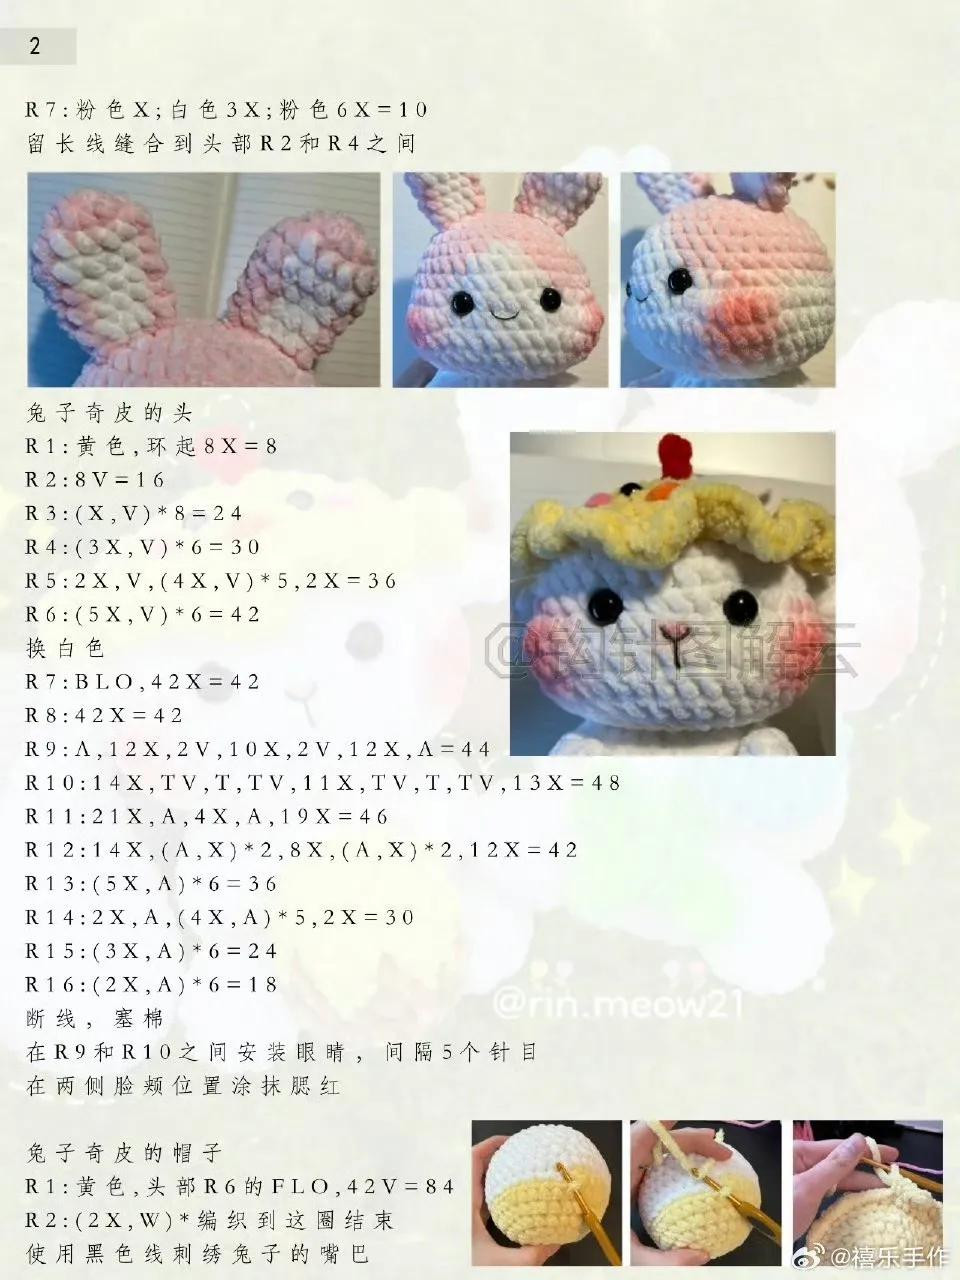 Easter bunny crochet pattern